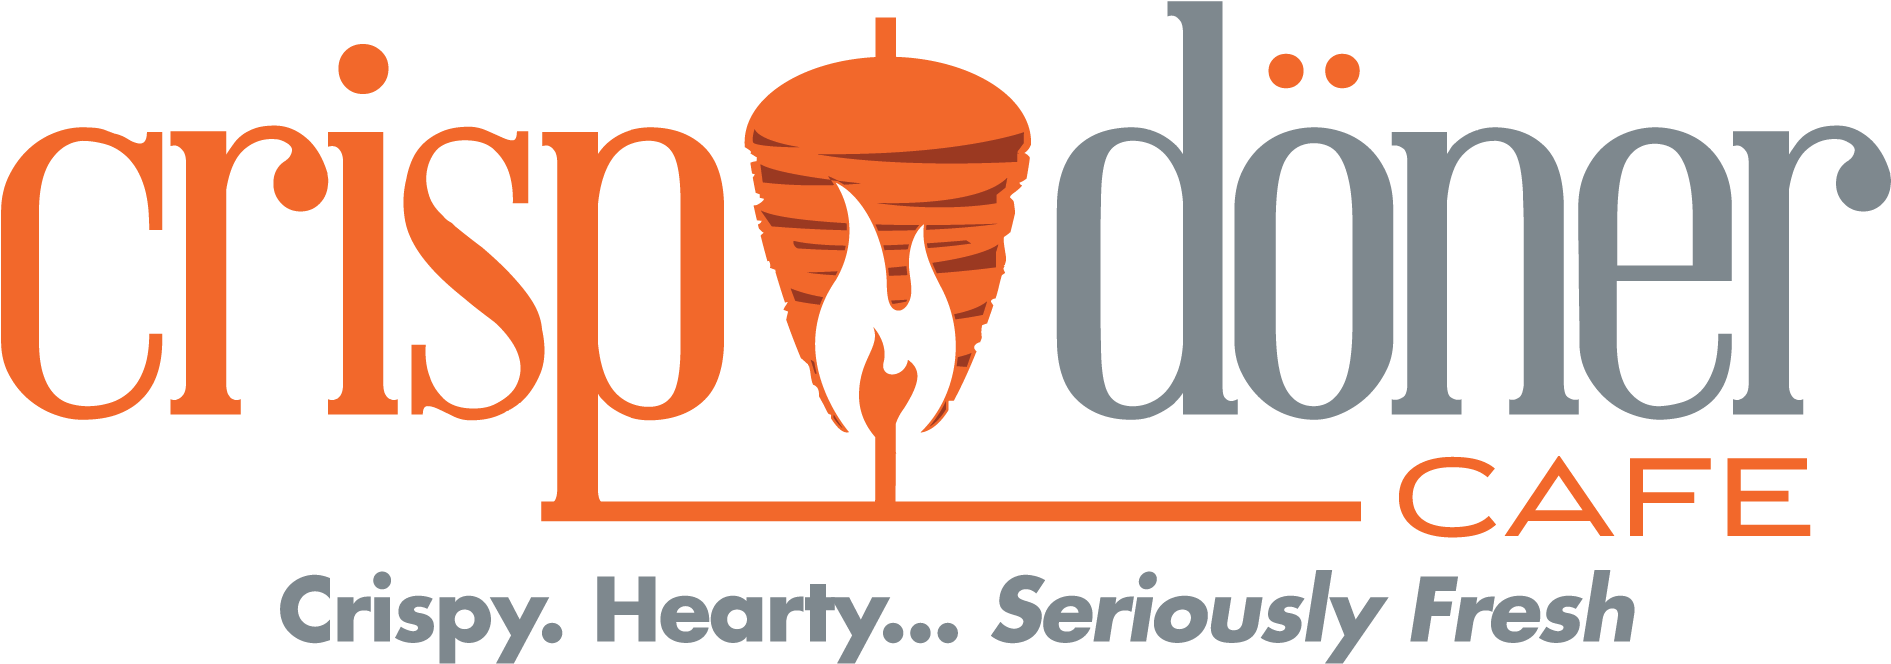 Food Truck Application Form - Döner Logo Png (2097x846)